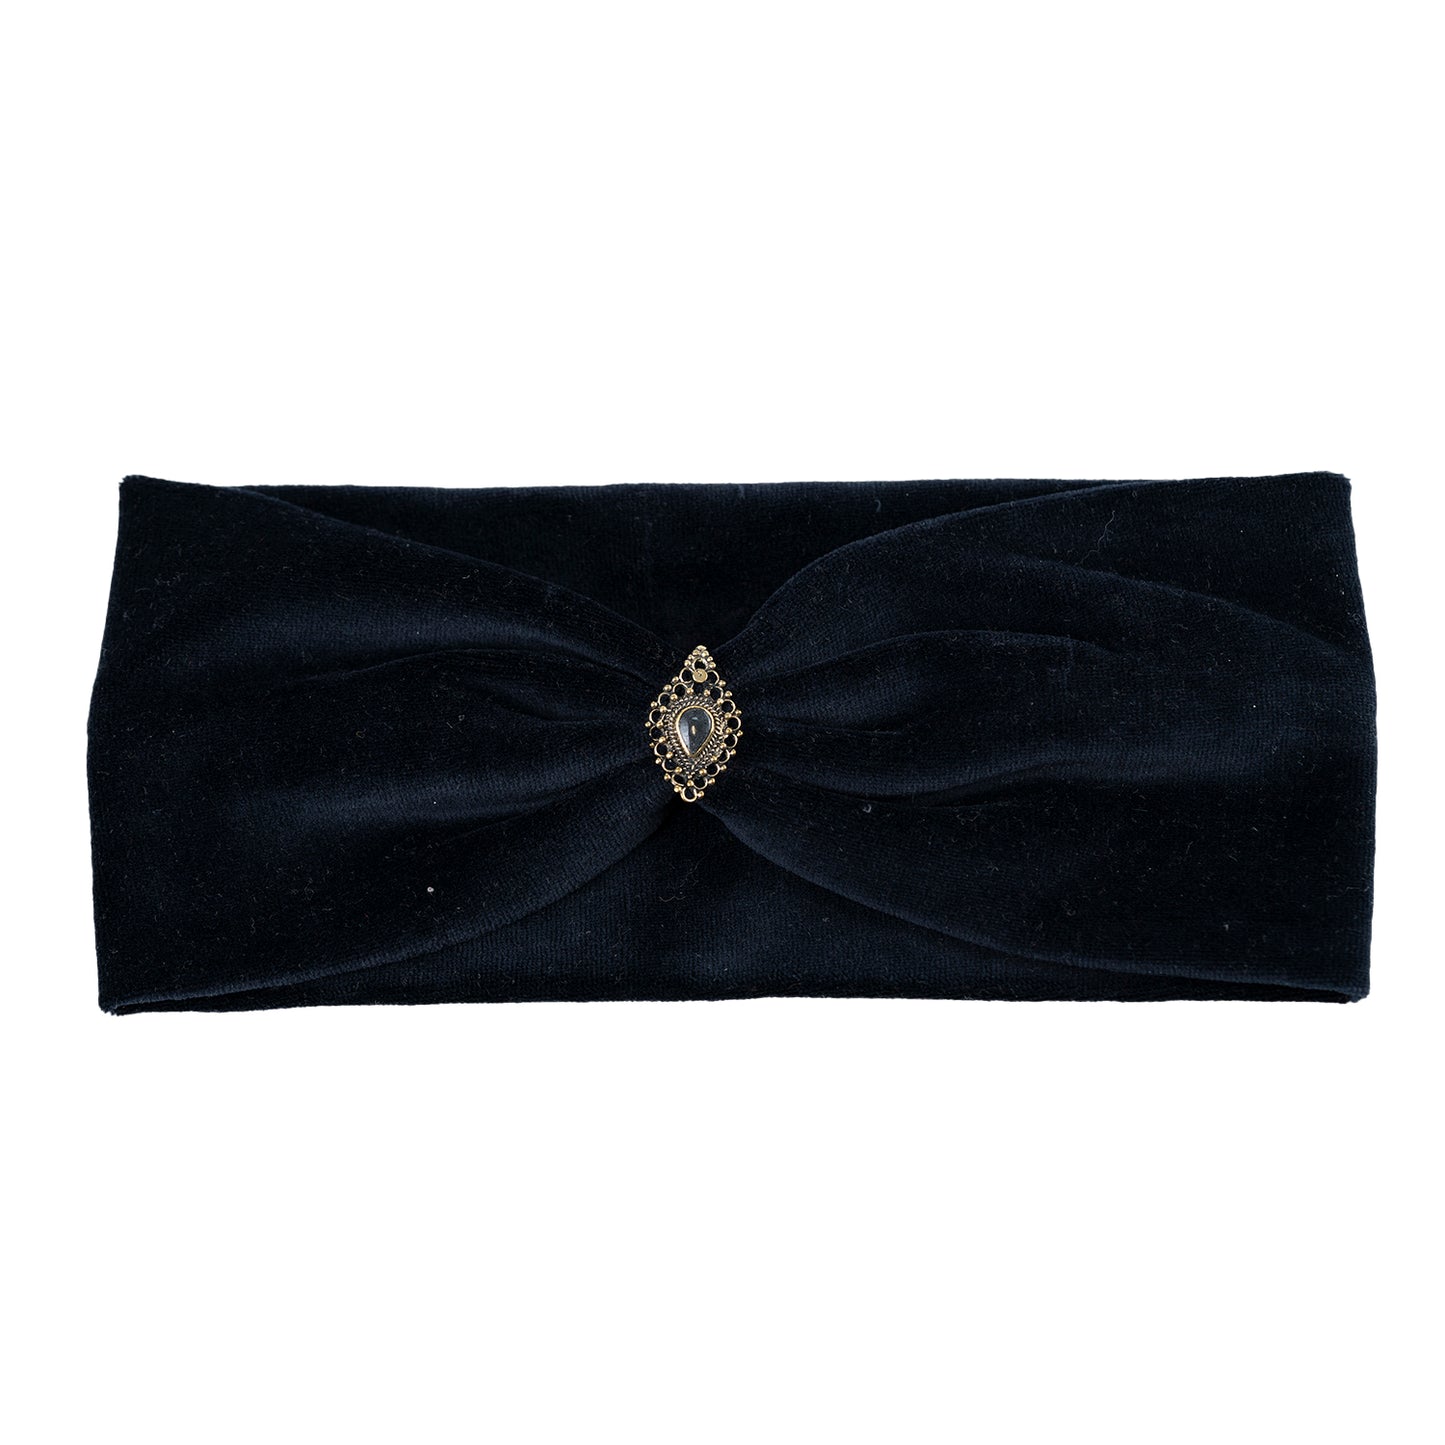 Boho Haarband in schwarz - aus Samt mit Edelsteinen verziert